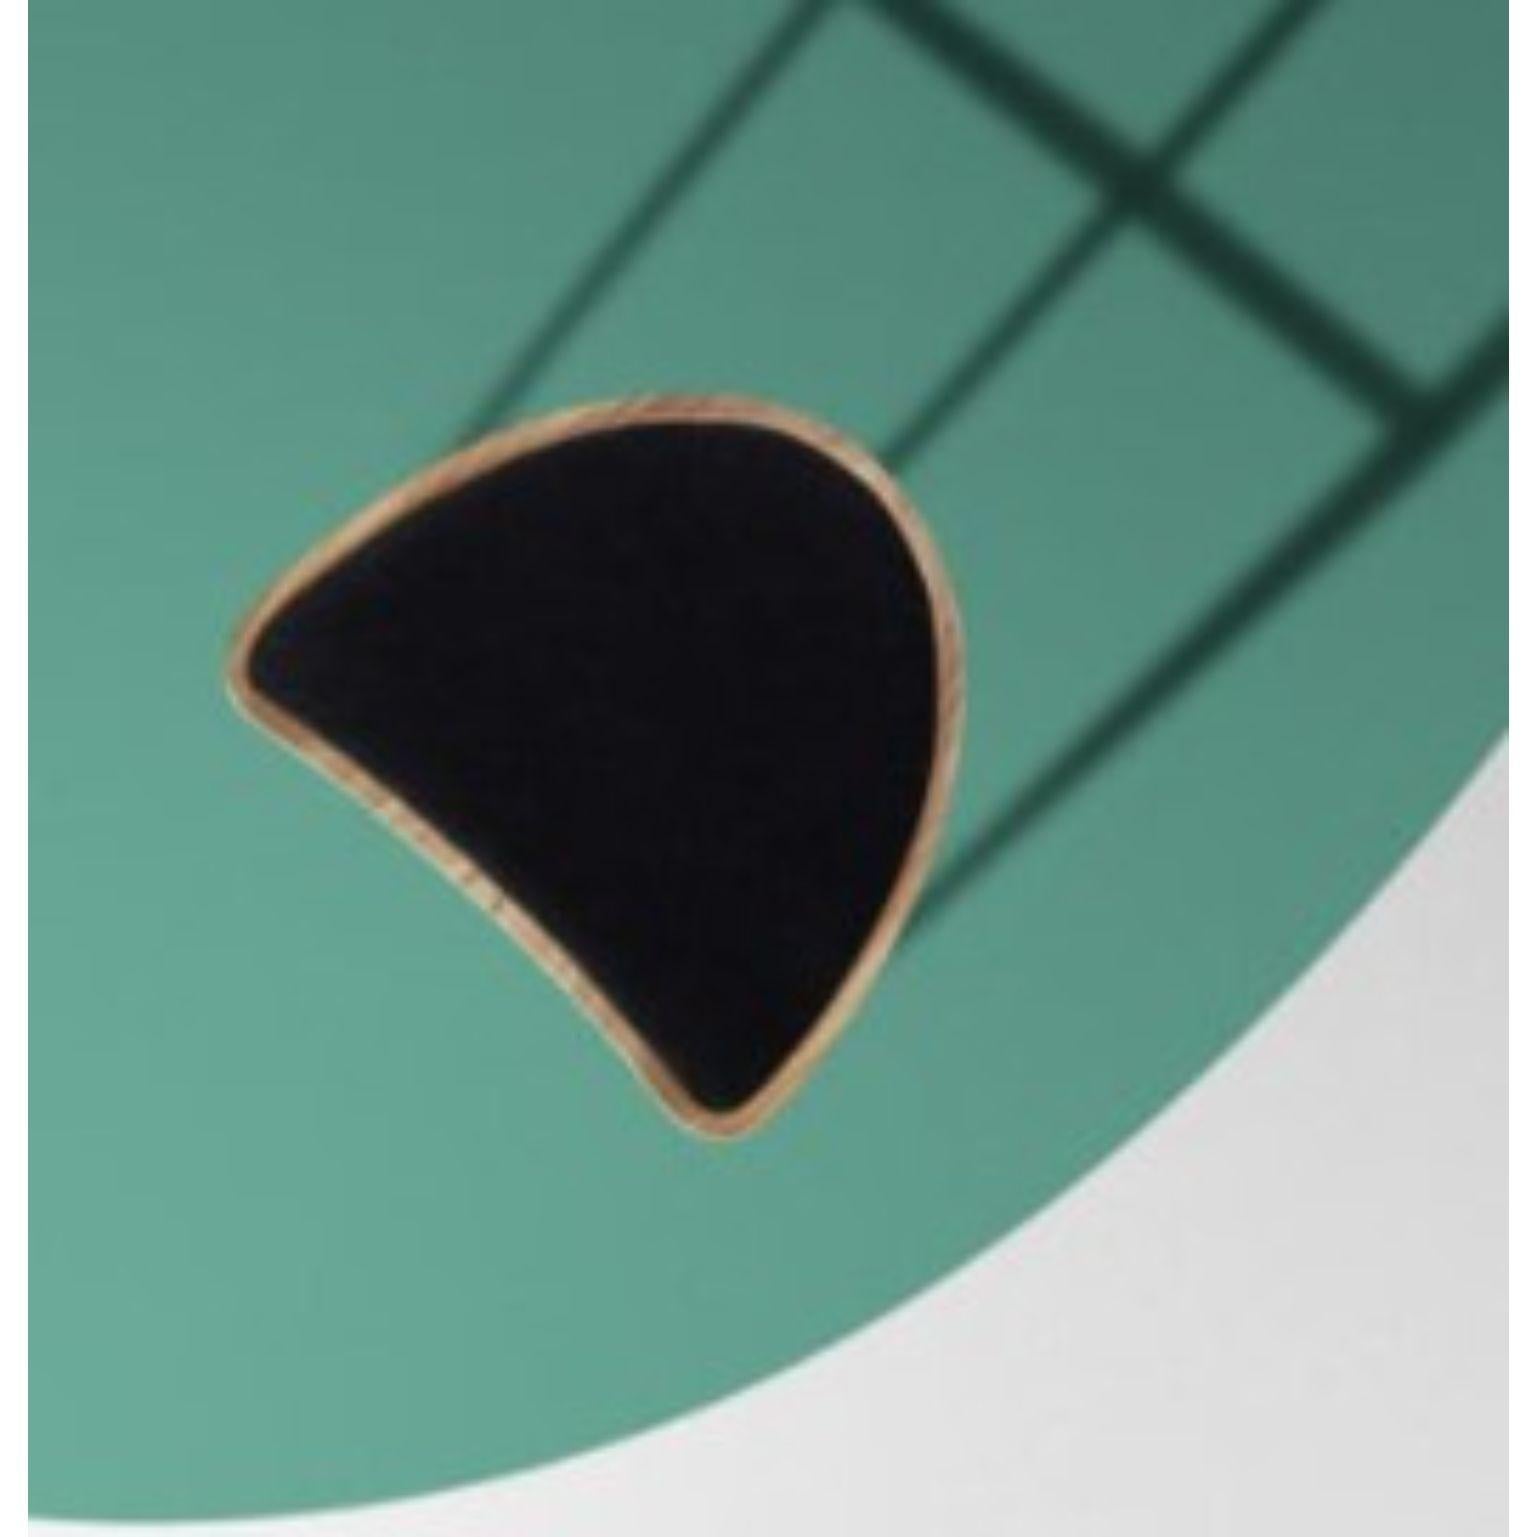 Boomerang-Hocker ohne Rückenlehne von Pepe Albargues
Abmessungen: B47, T48, H79
MATERIALIEN: Lackierte Eisenstruktur (Kupfer / verchromte / goldene Eisenstruktur) 
Rückenlehne und Sitz aus Sperrholz mit einer natürlichen Eichenholzschicht